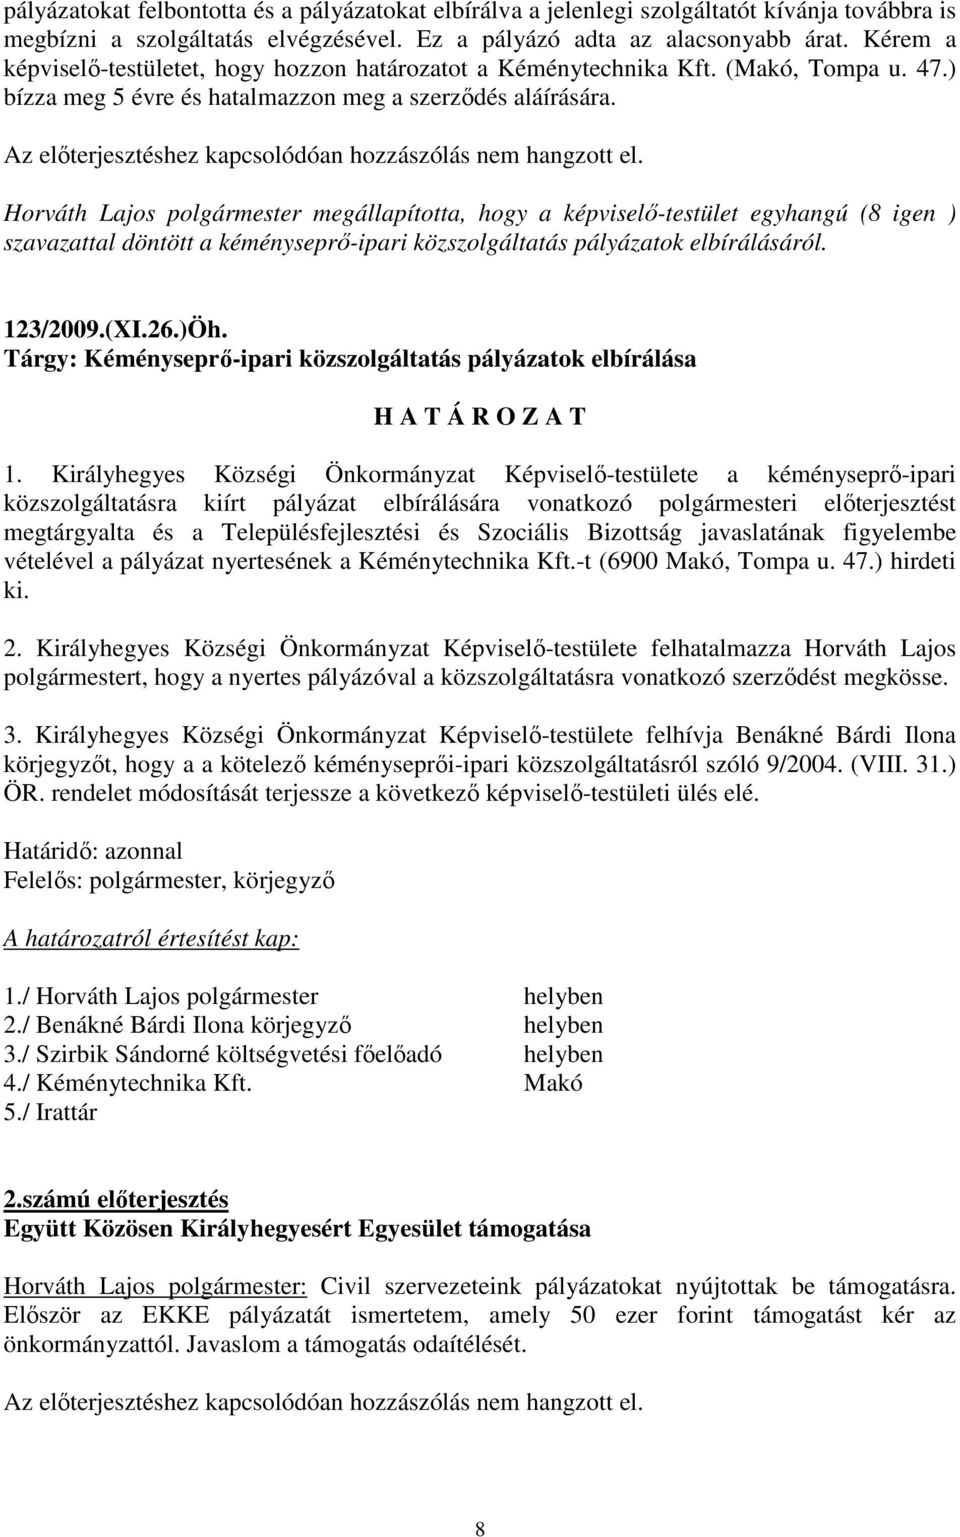 Az elıterjesztéshez kapcsolódóan hozzászólás nem hangzott el. szavazattal döntött a kéményseprı-ipari közszolgáltatás pályázatok elbírálásáról. 123/2009.(XI.26.)Öh.